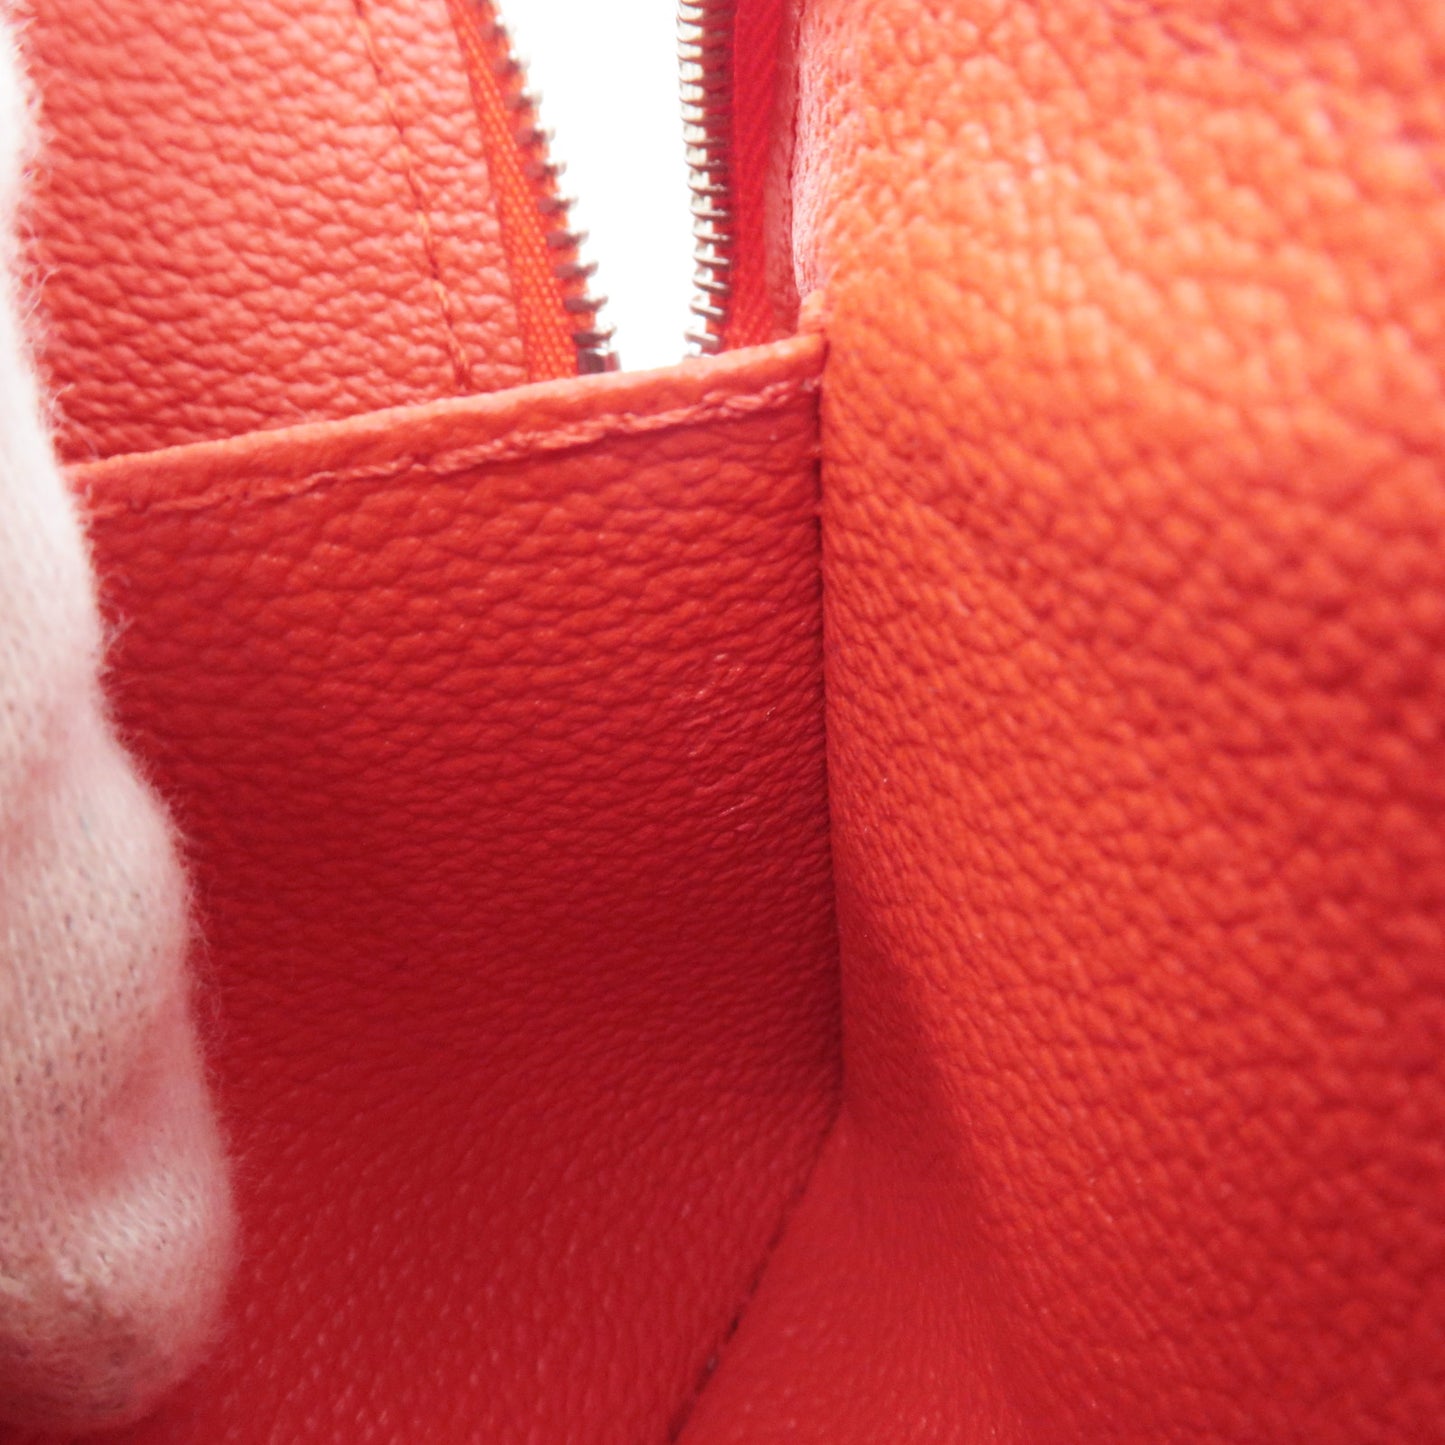 Louis Vuitton Pochette Cosmetic Coquelicot M41114 EPI Leather